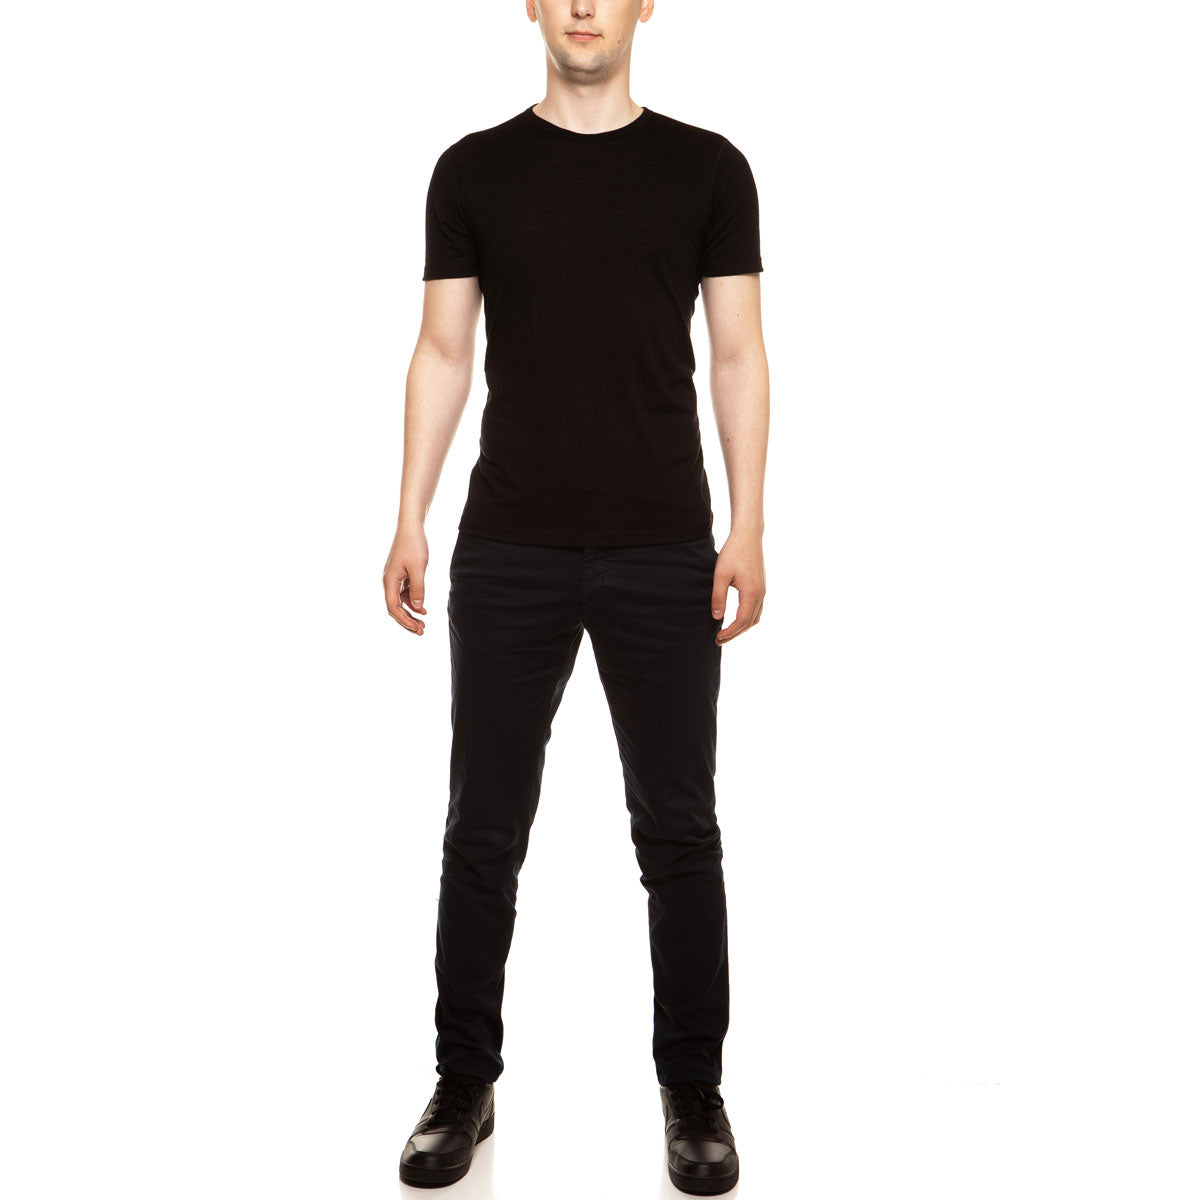 MENIQUE 100% Merino Wool Mens Shirt Black